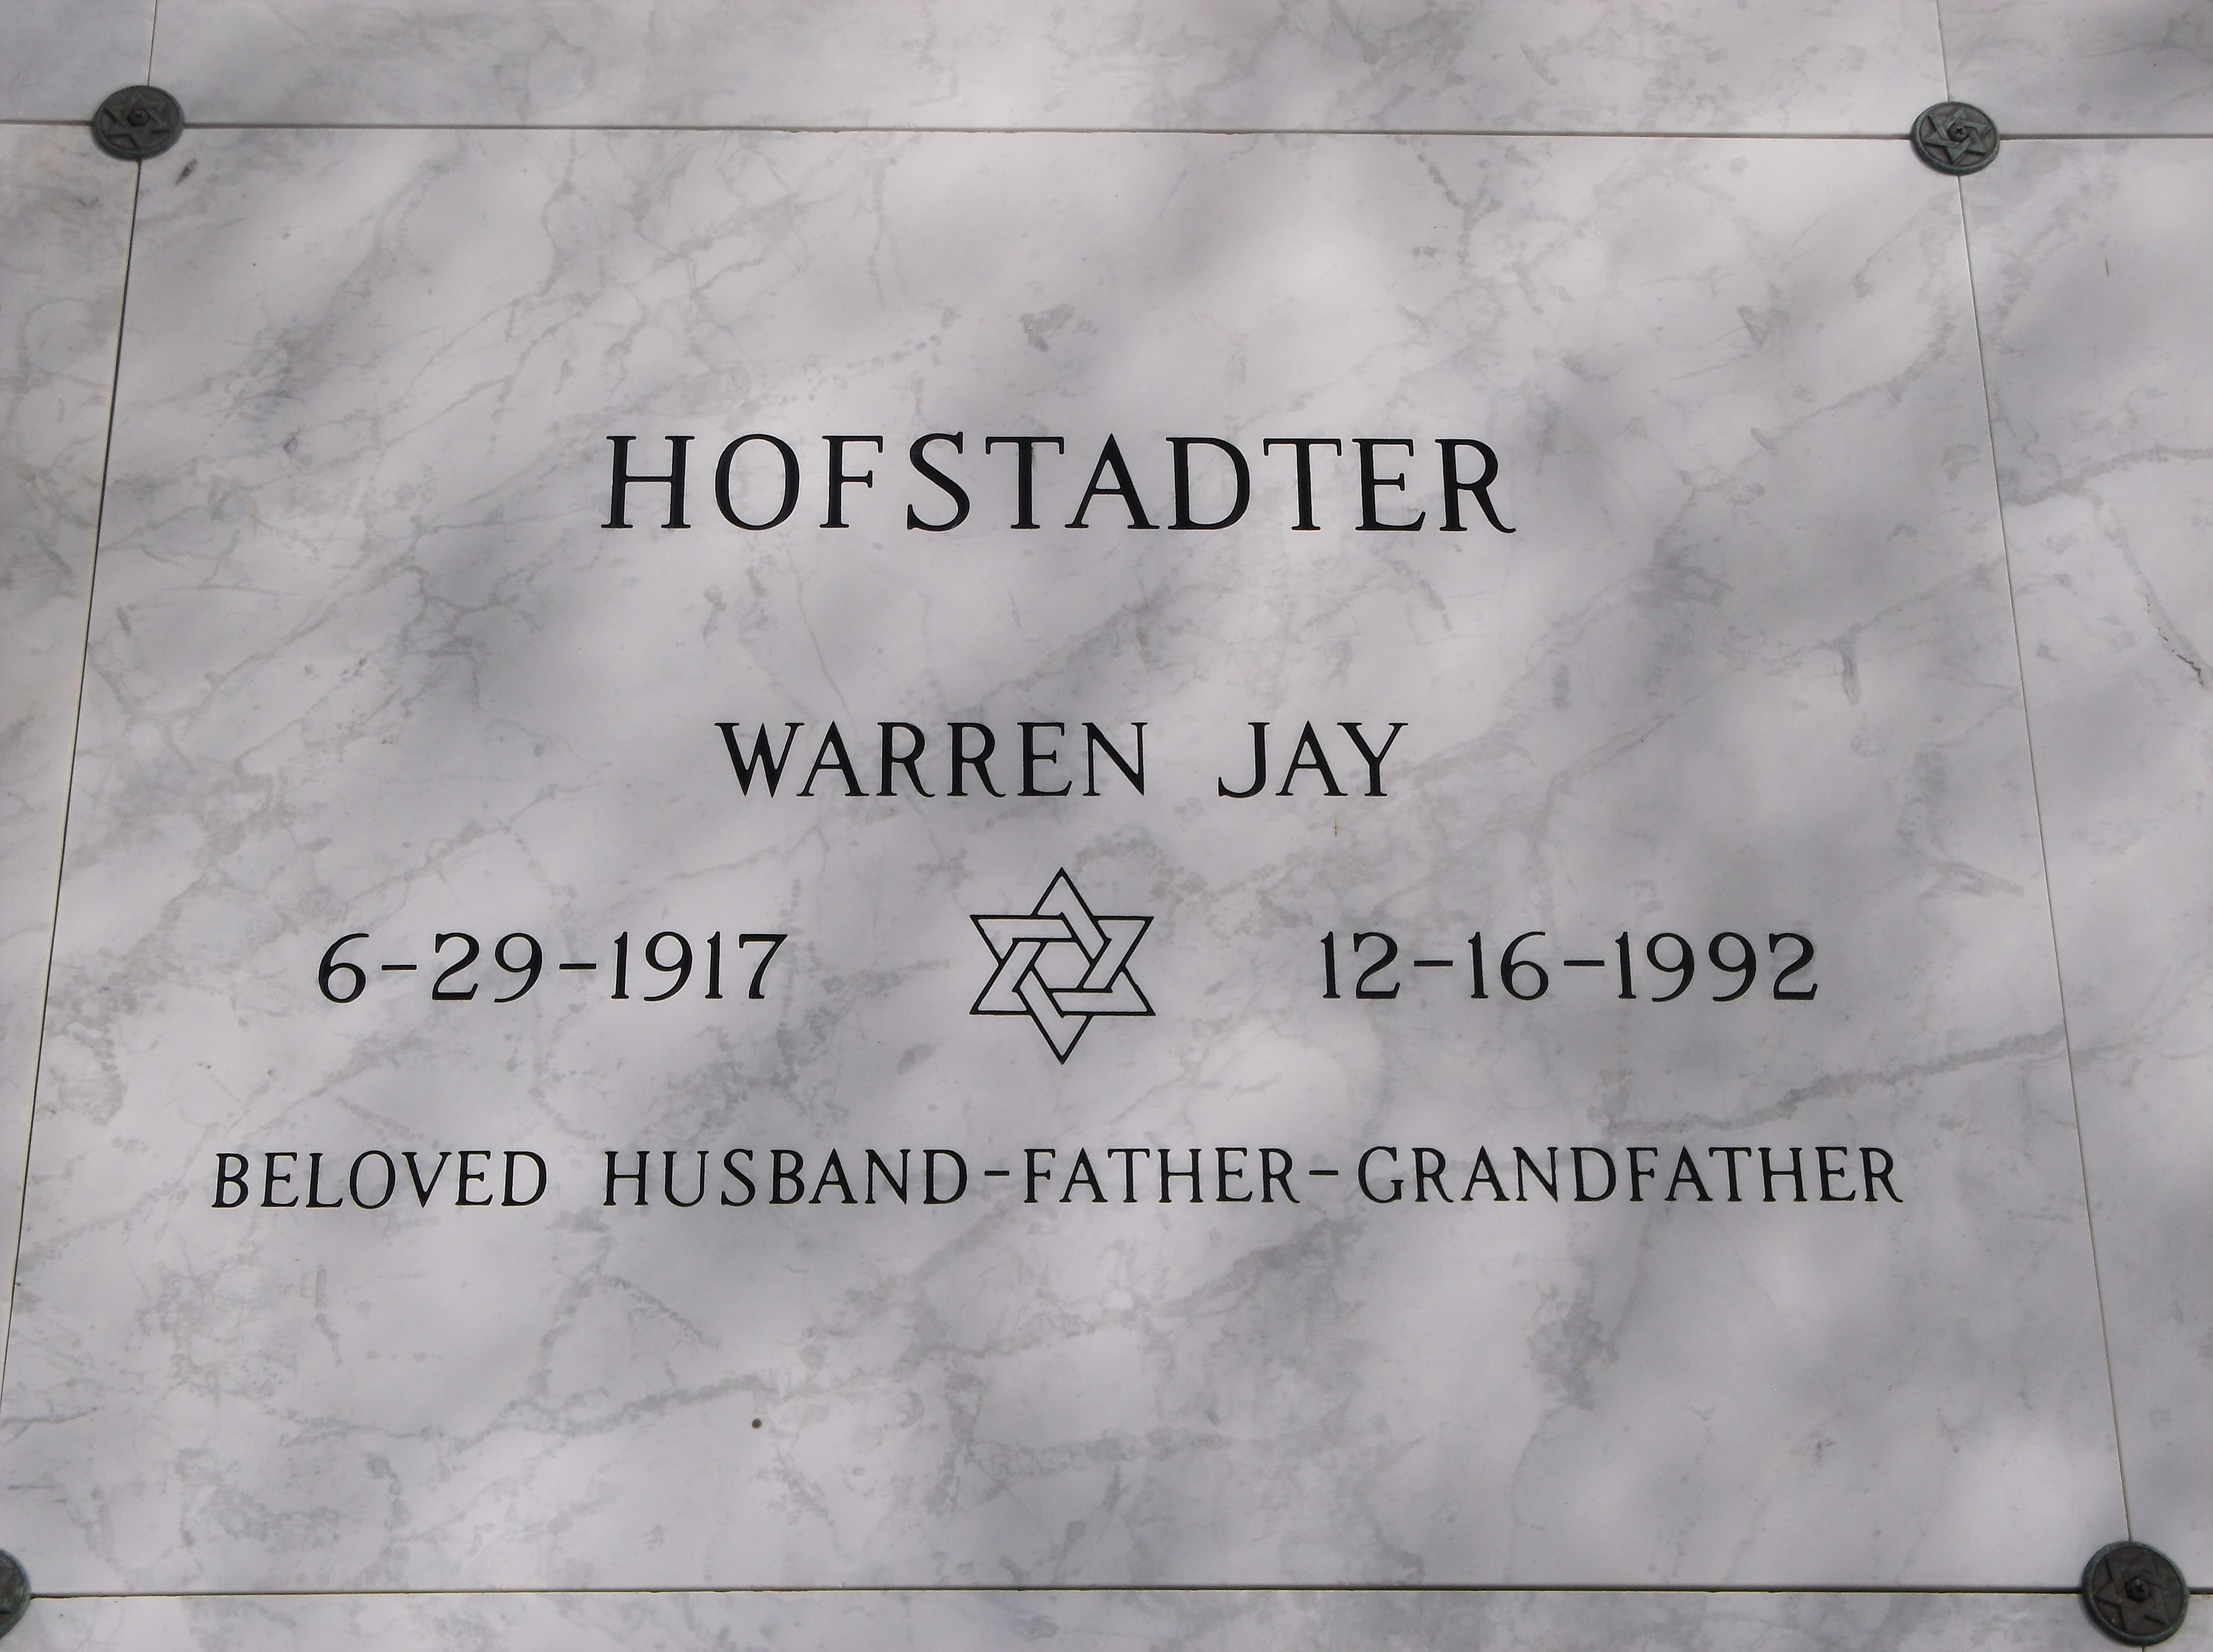 Warren Jay Hofstadter